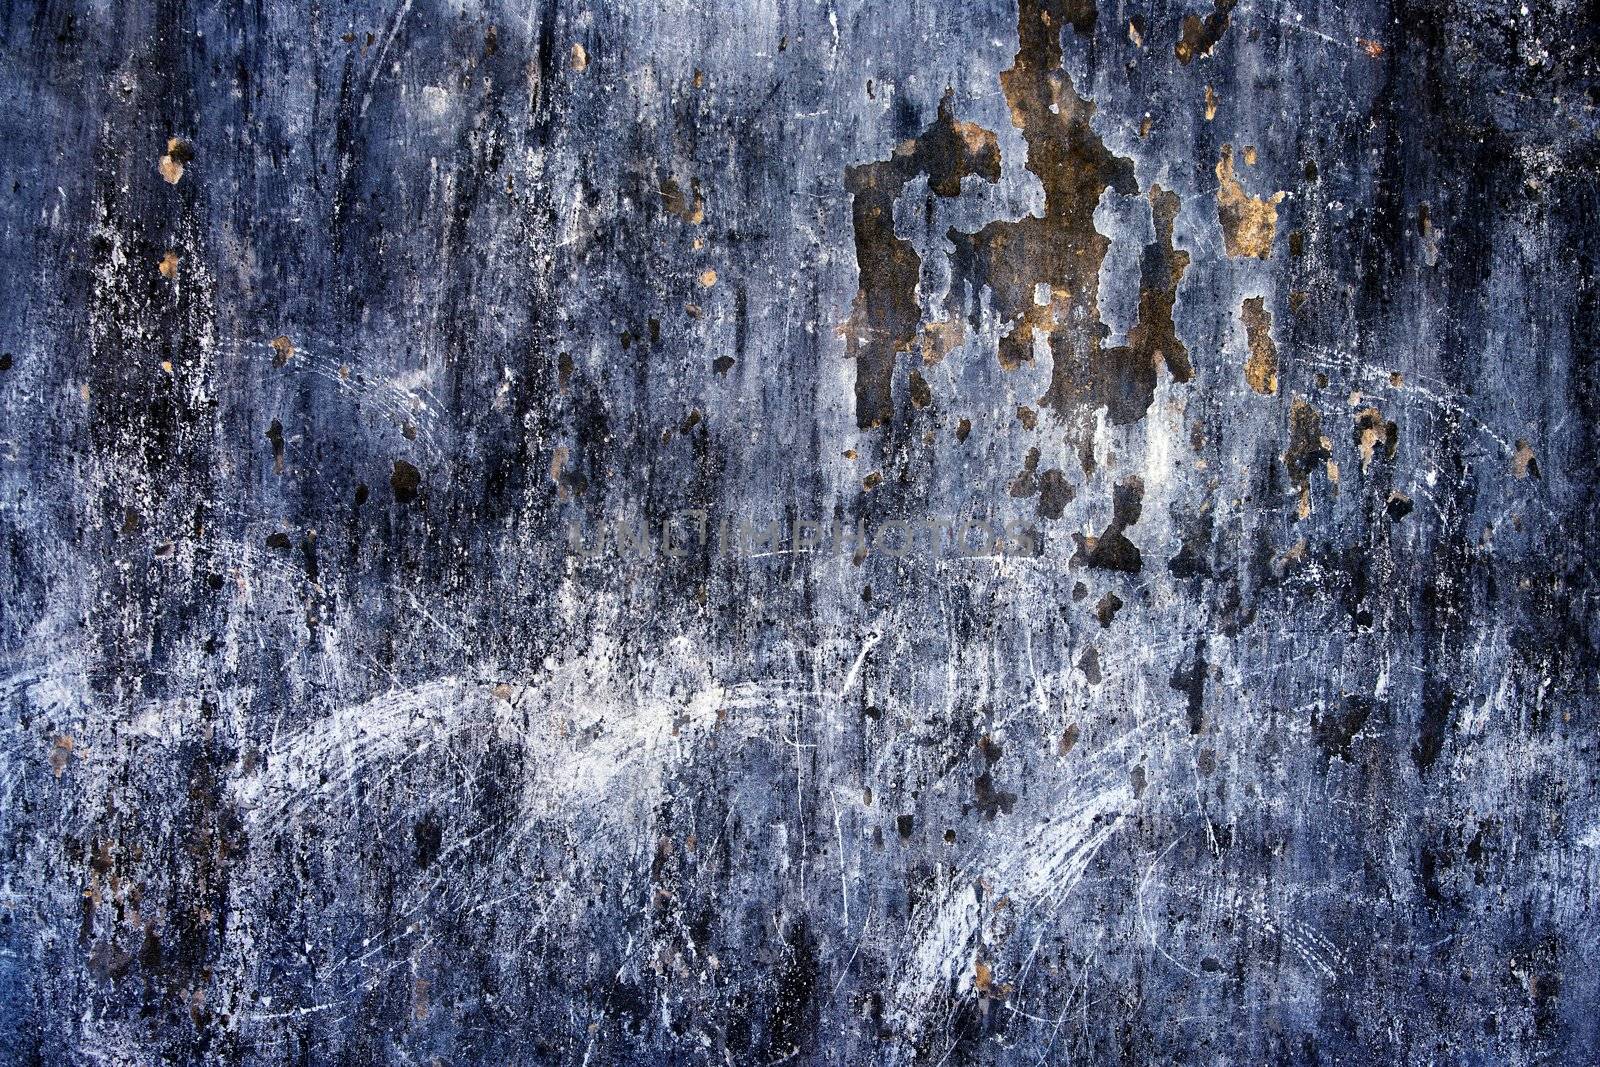 Abstract Textured dark blue grunge background.